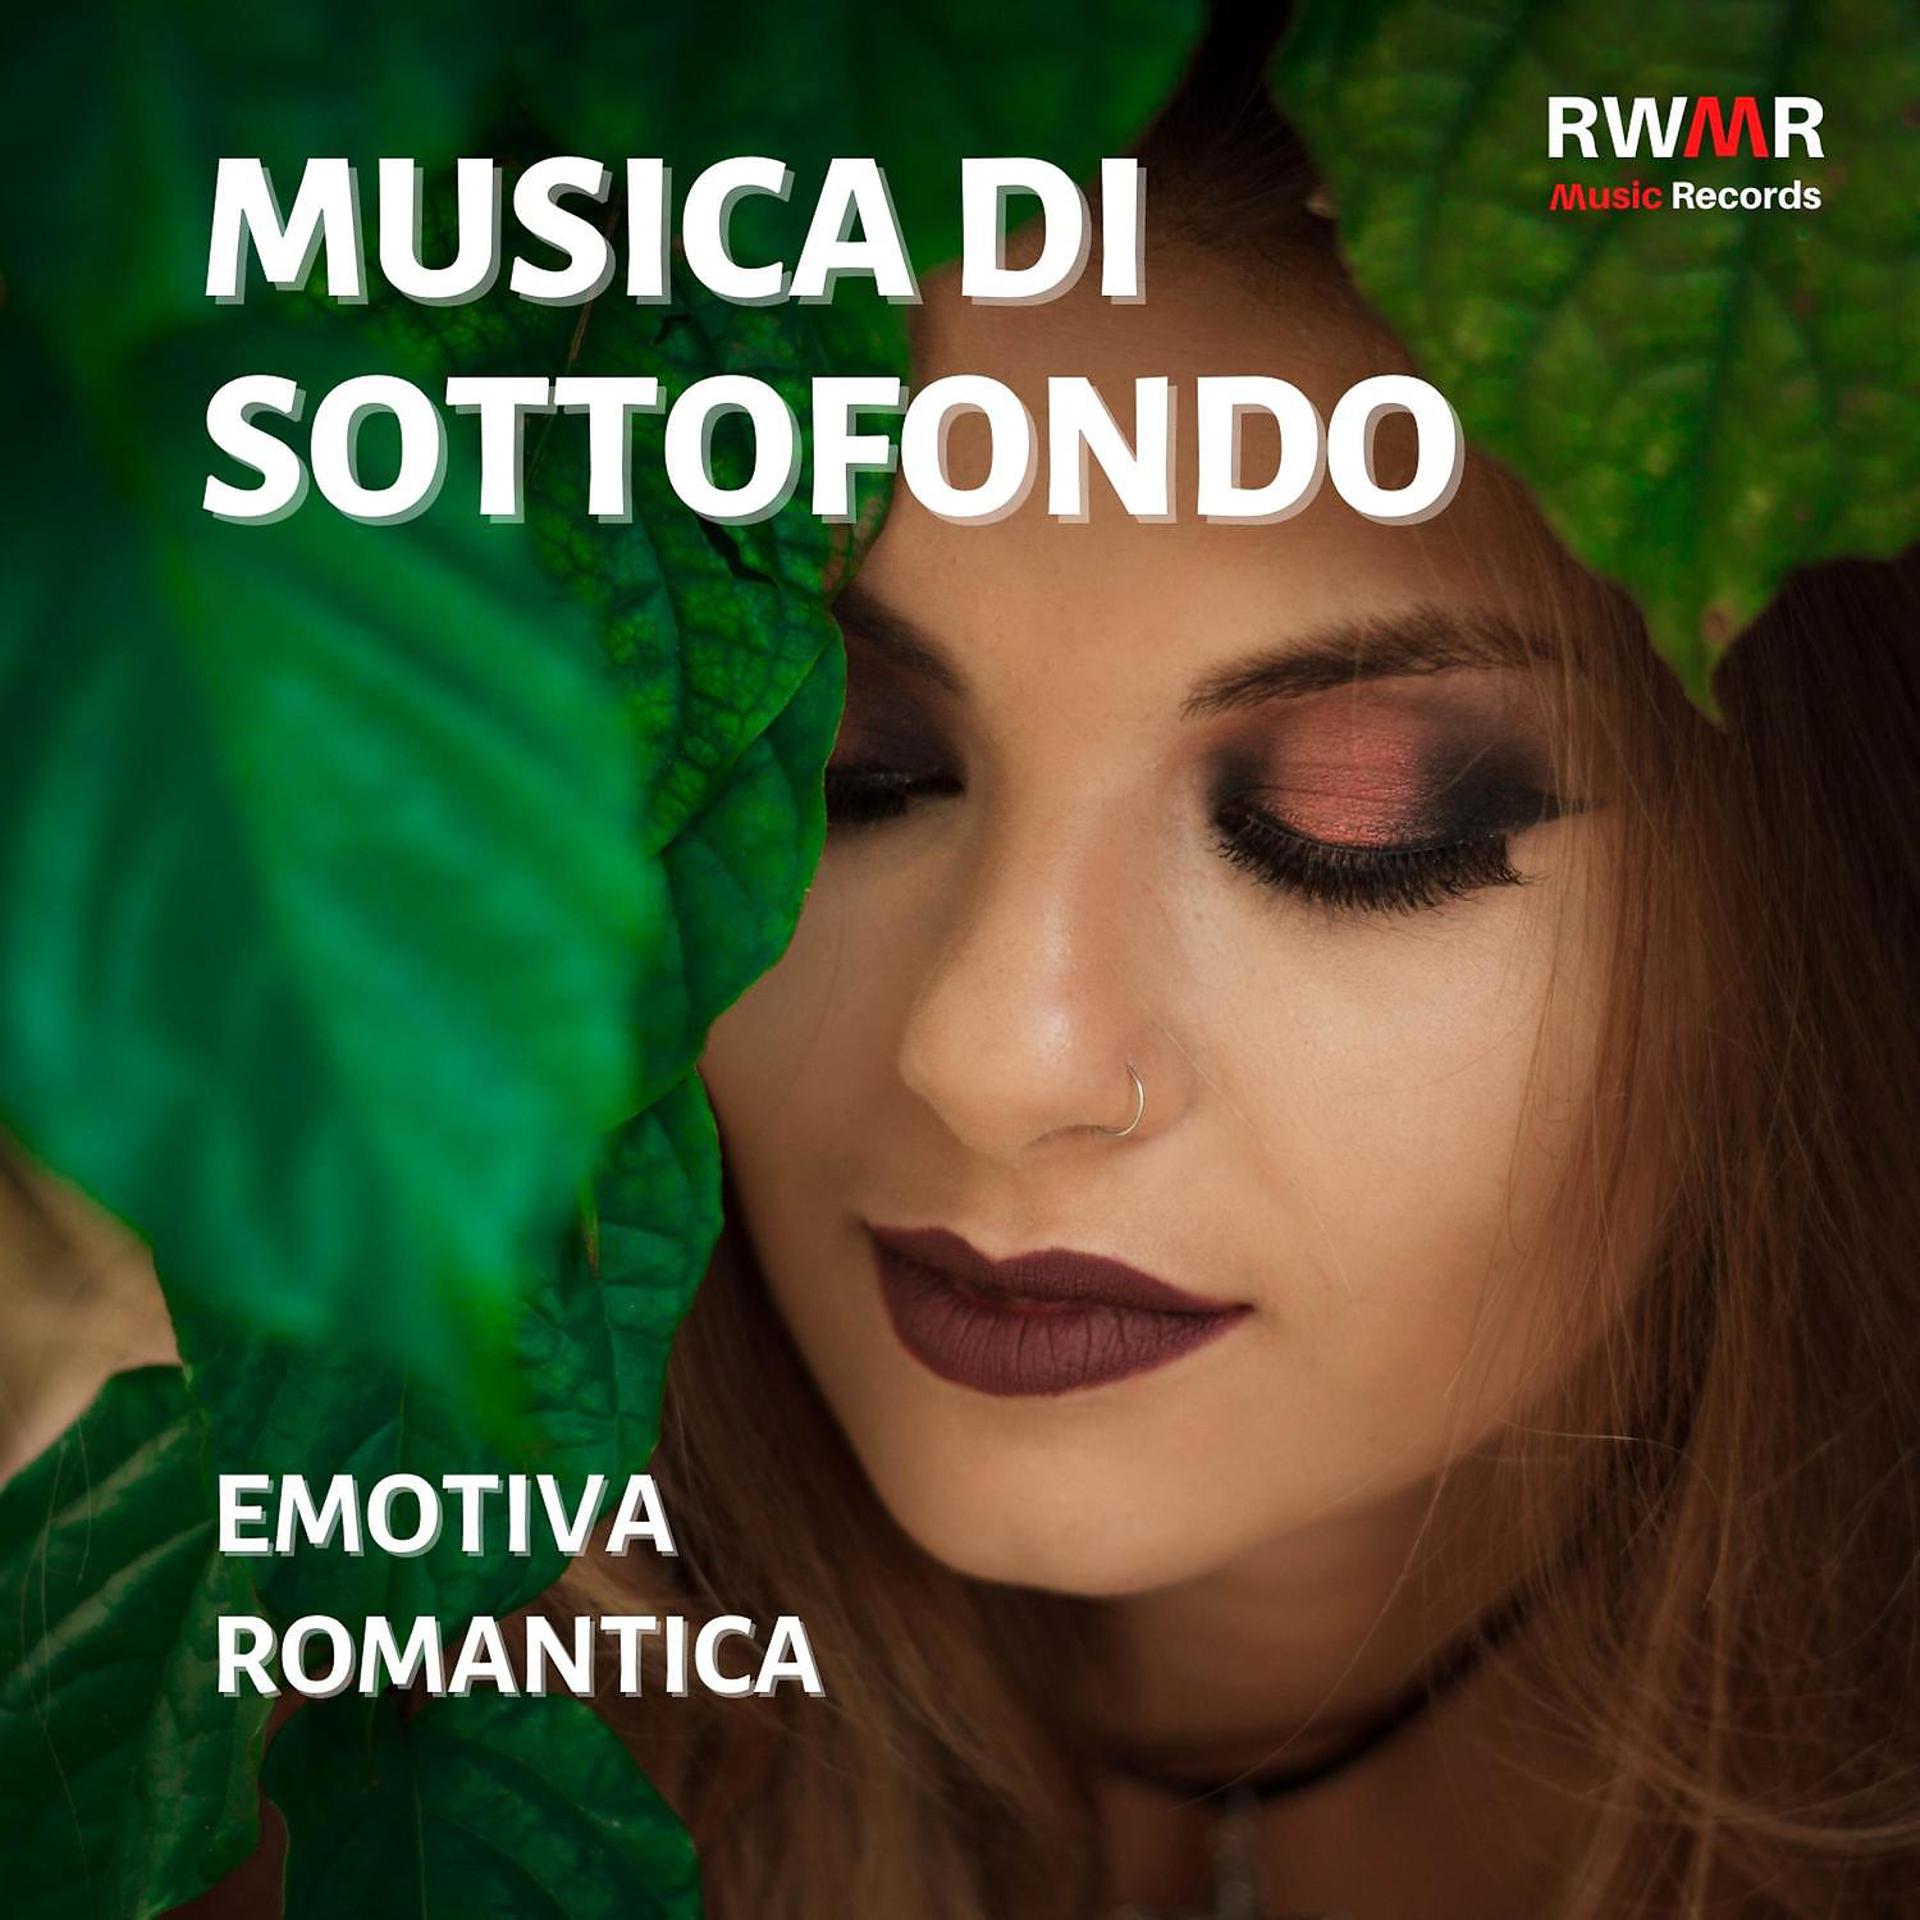 Постер альбома Musica di sottofondo – Canzoni d'amore romantiche, musica strumentale rilassante, calma, relax, pianoforte, sassofono, melodie sentimentali